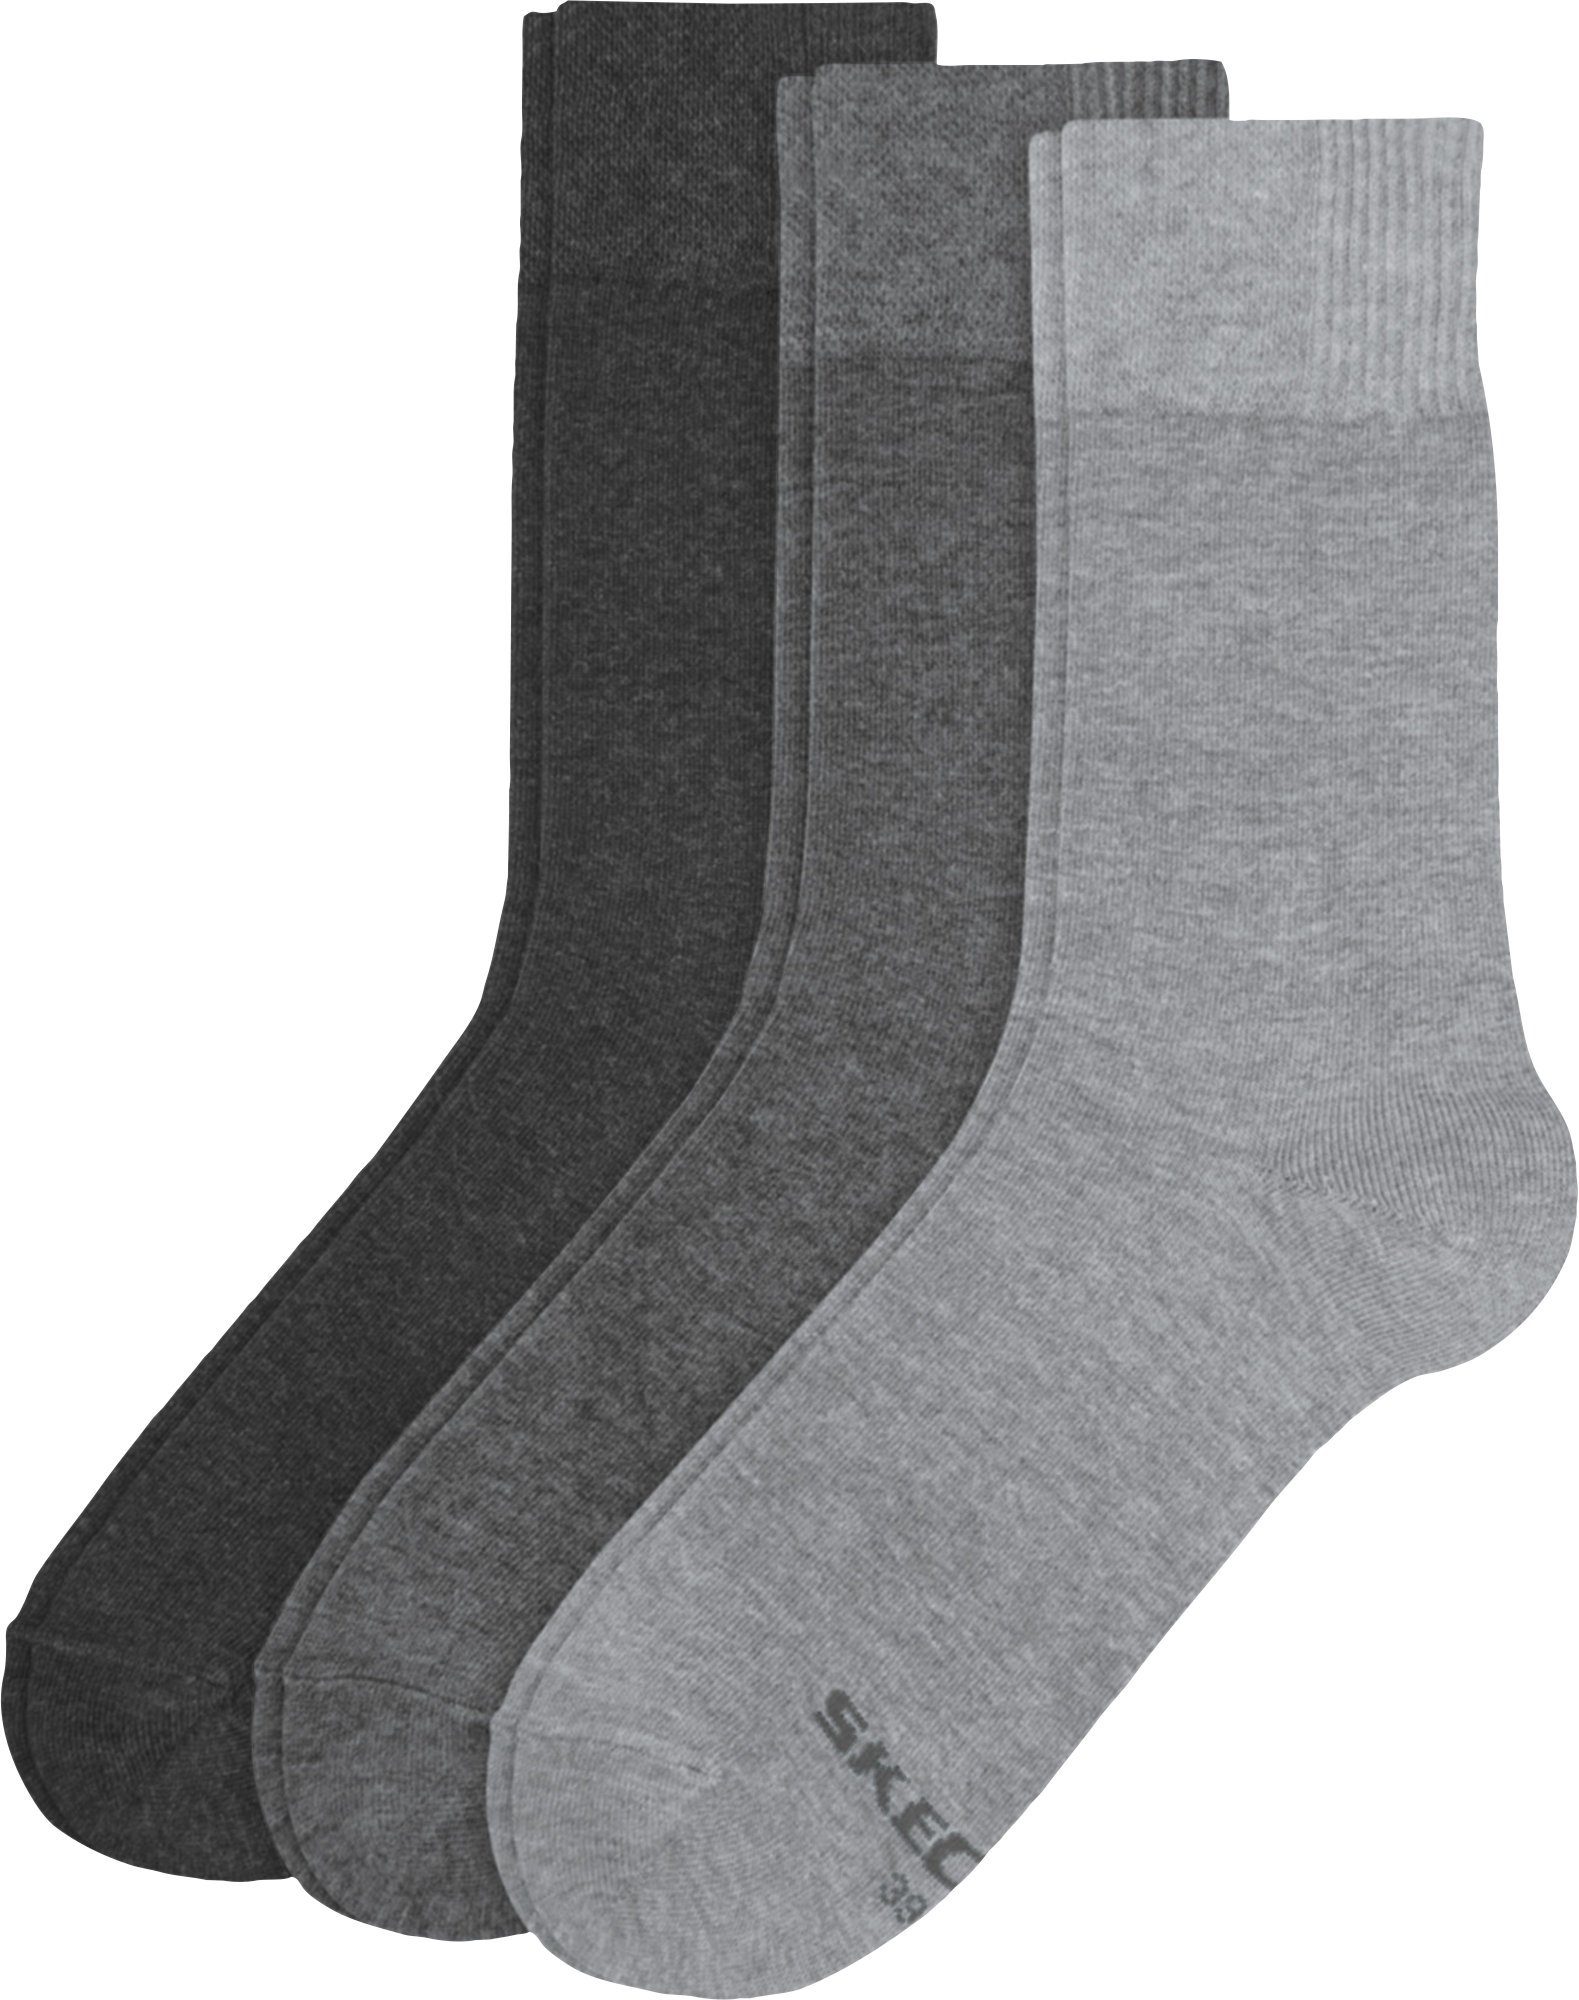 3 Socken Uni Skechers Herren-Socken Paar grau